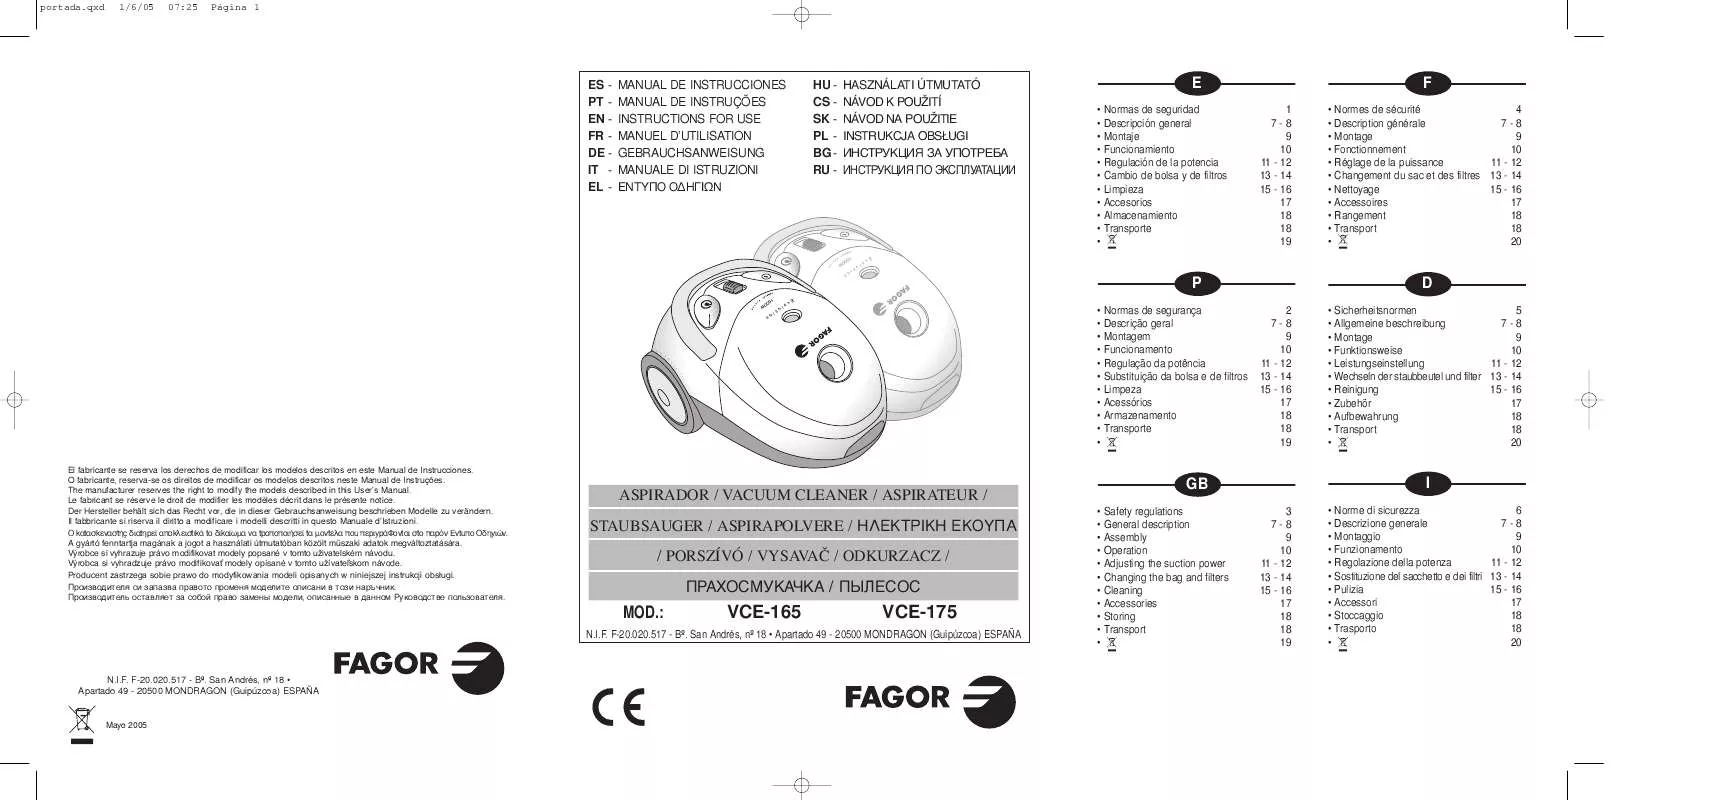 Mode d'emploi FAGOR VCE-165